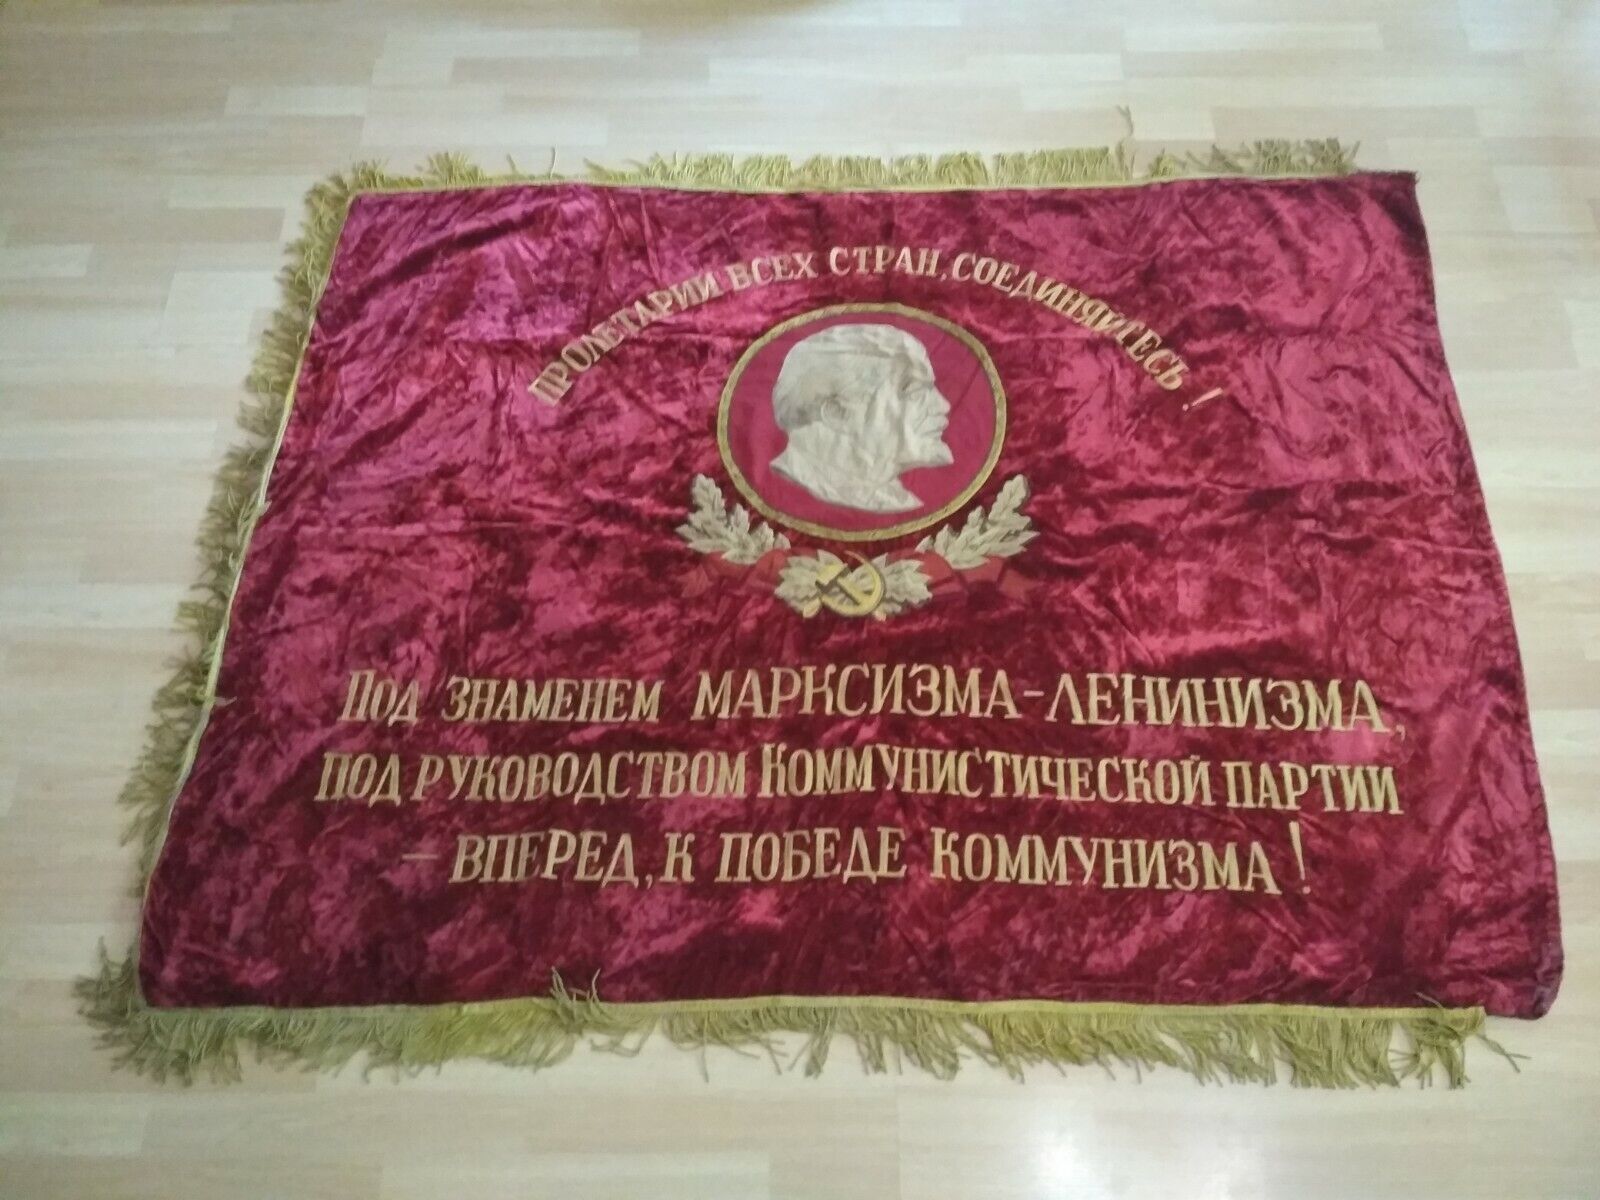 The Grand velvet flag 1950-60s USSR.